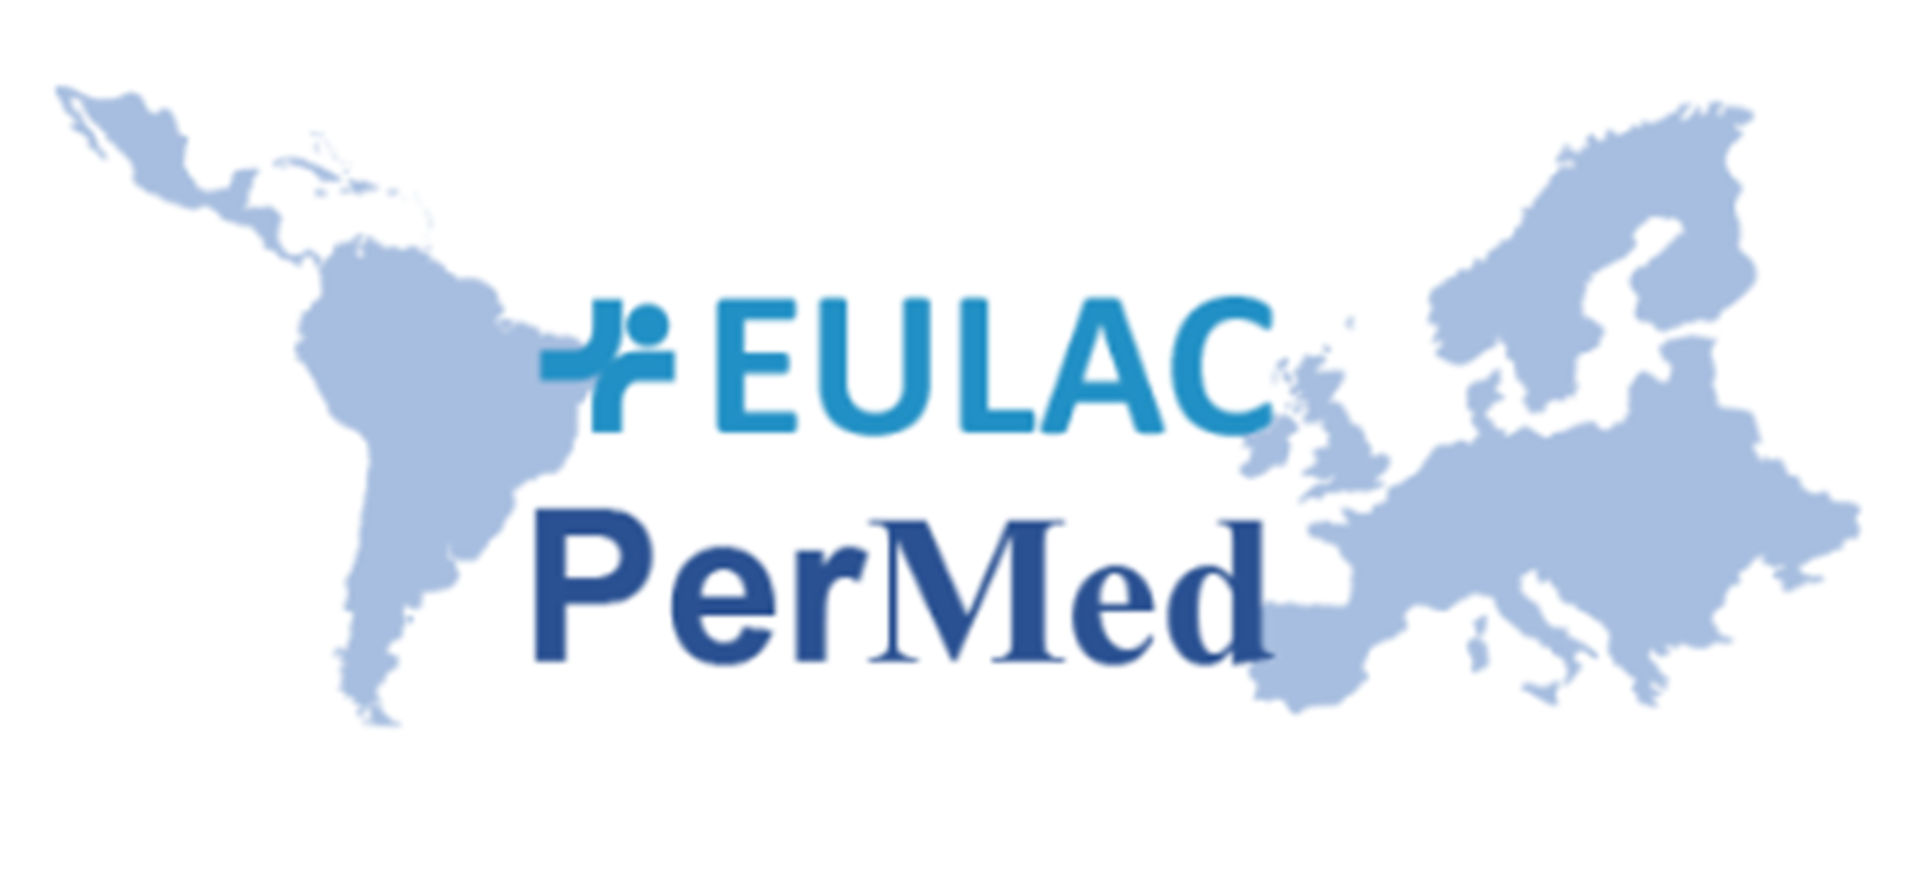 APERTURA DE INSCRIPCIONES: Workshop Técnico EULAC PerMed "Ensayos clínicos en medicina personalizada" 